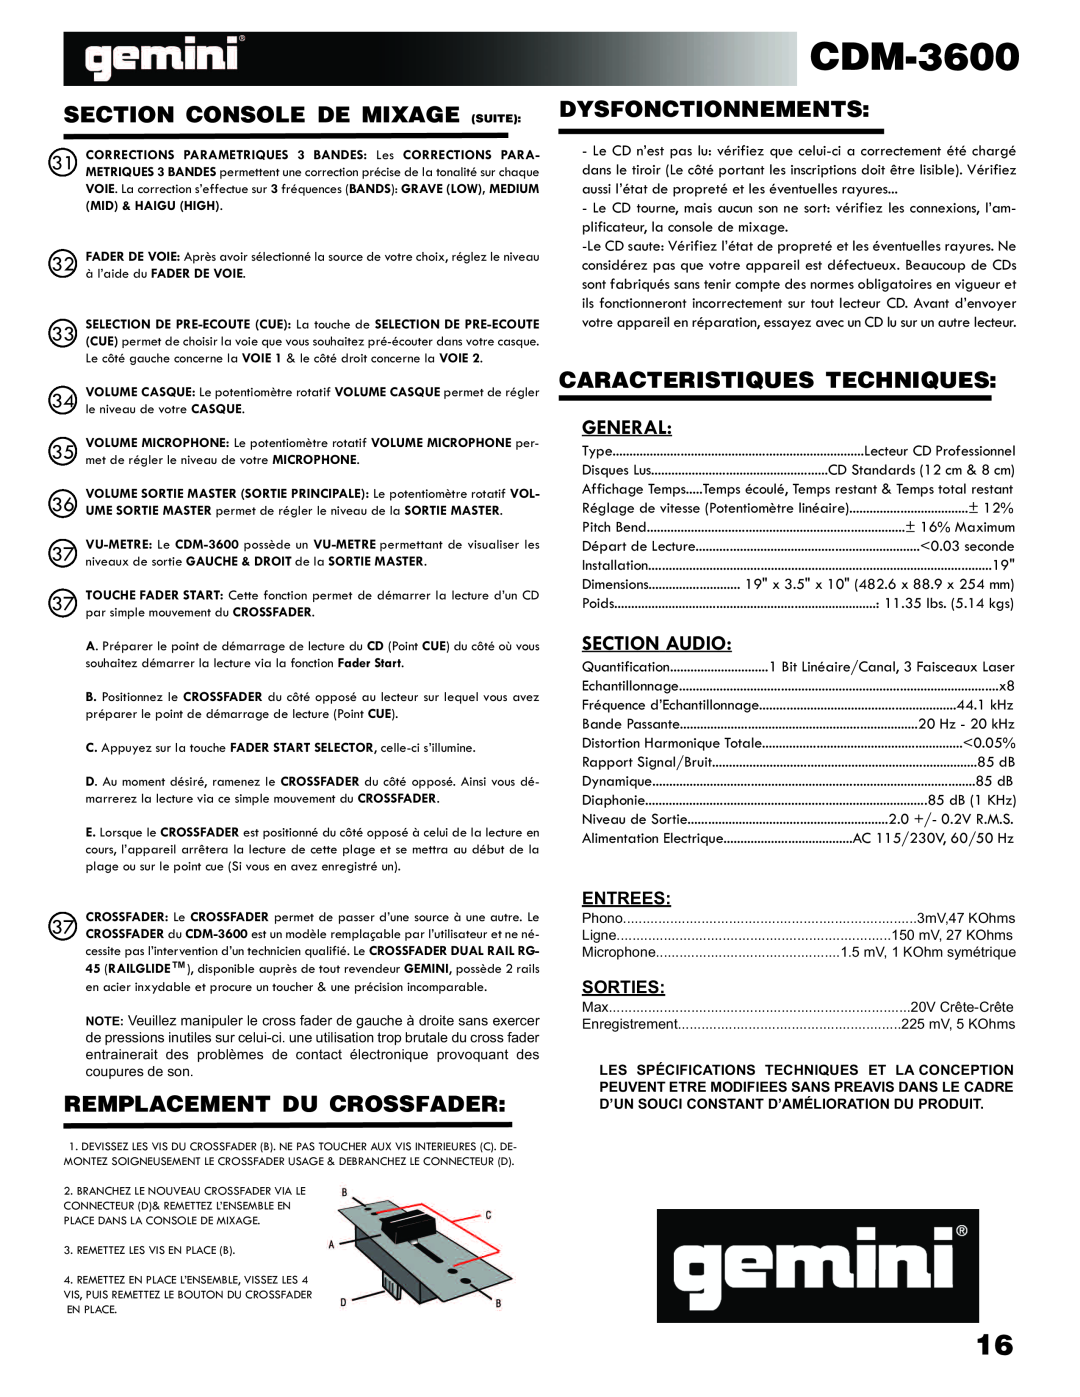 Gemini CDM-3600 manual Section Console De Mixage Suite, Remplacement Du Crossfader, Dysfonctionnements 